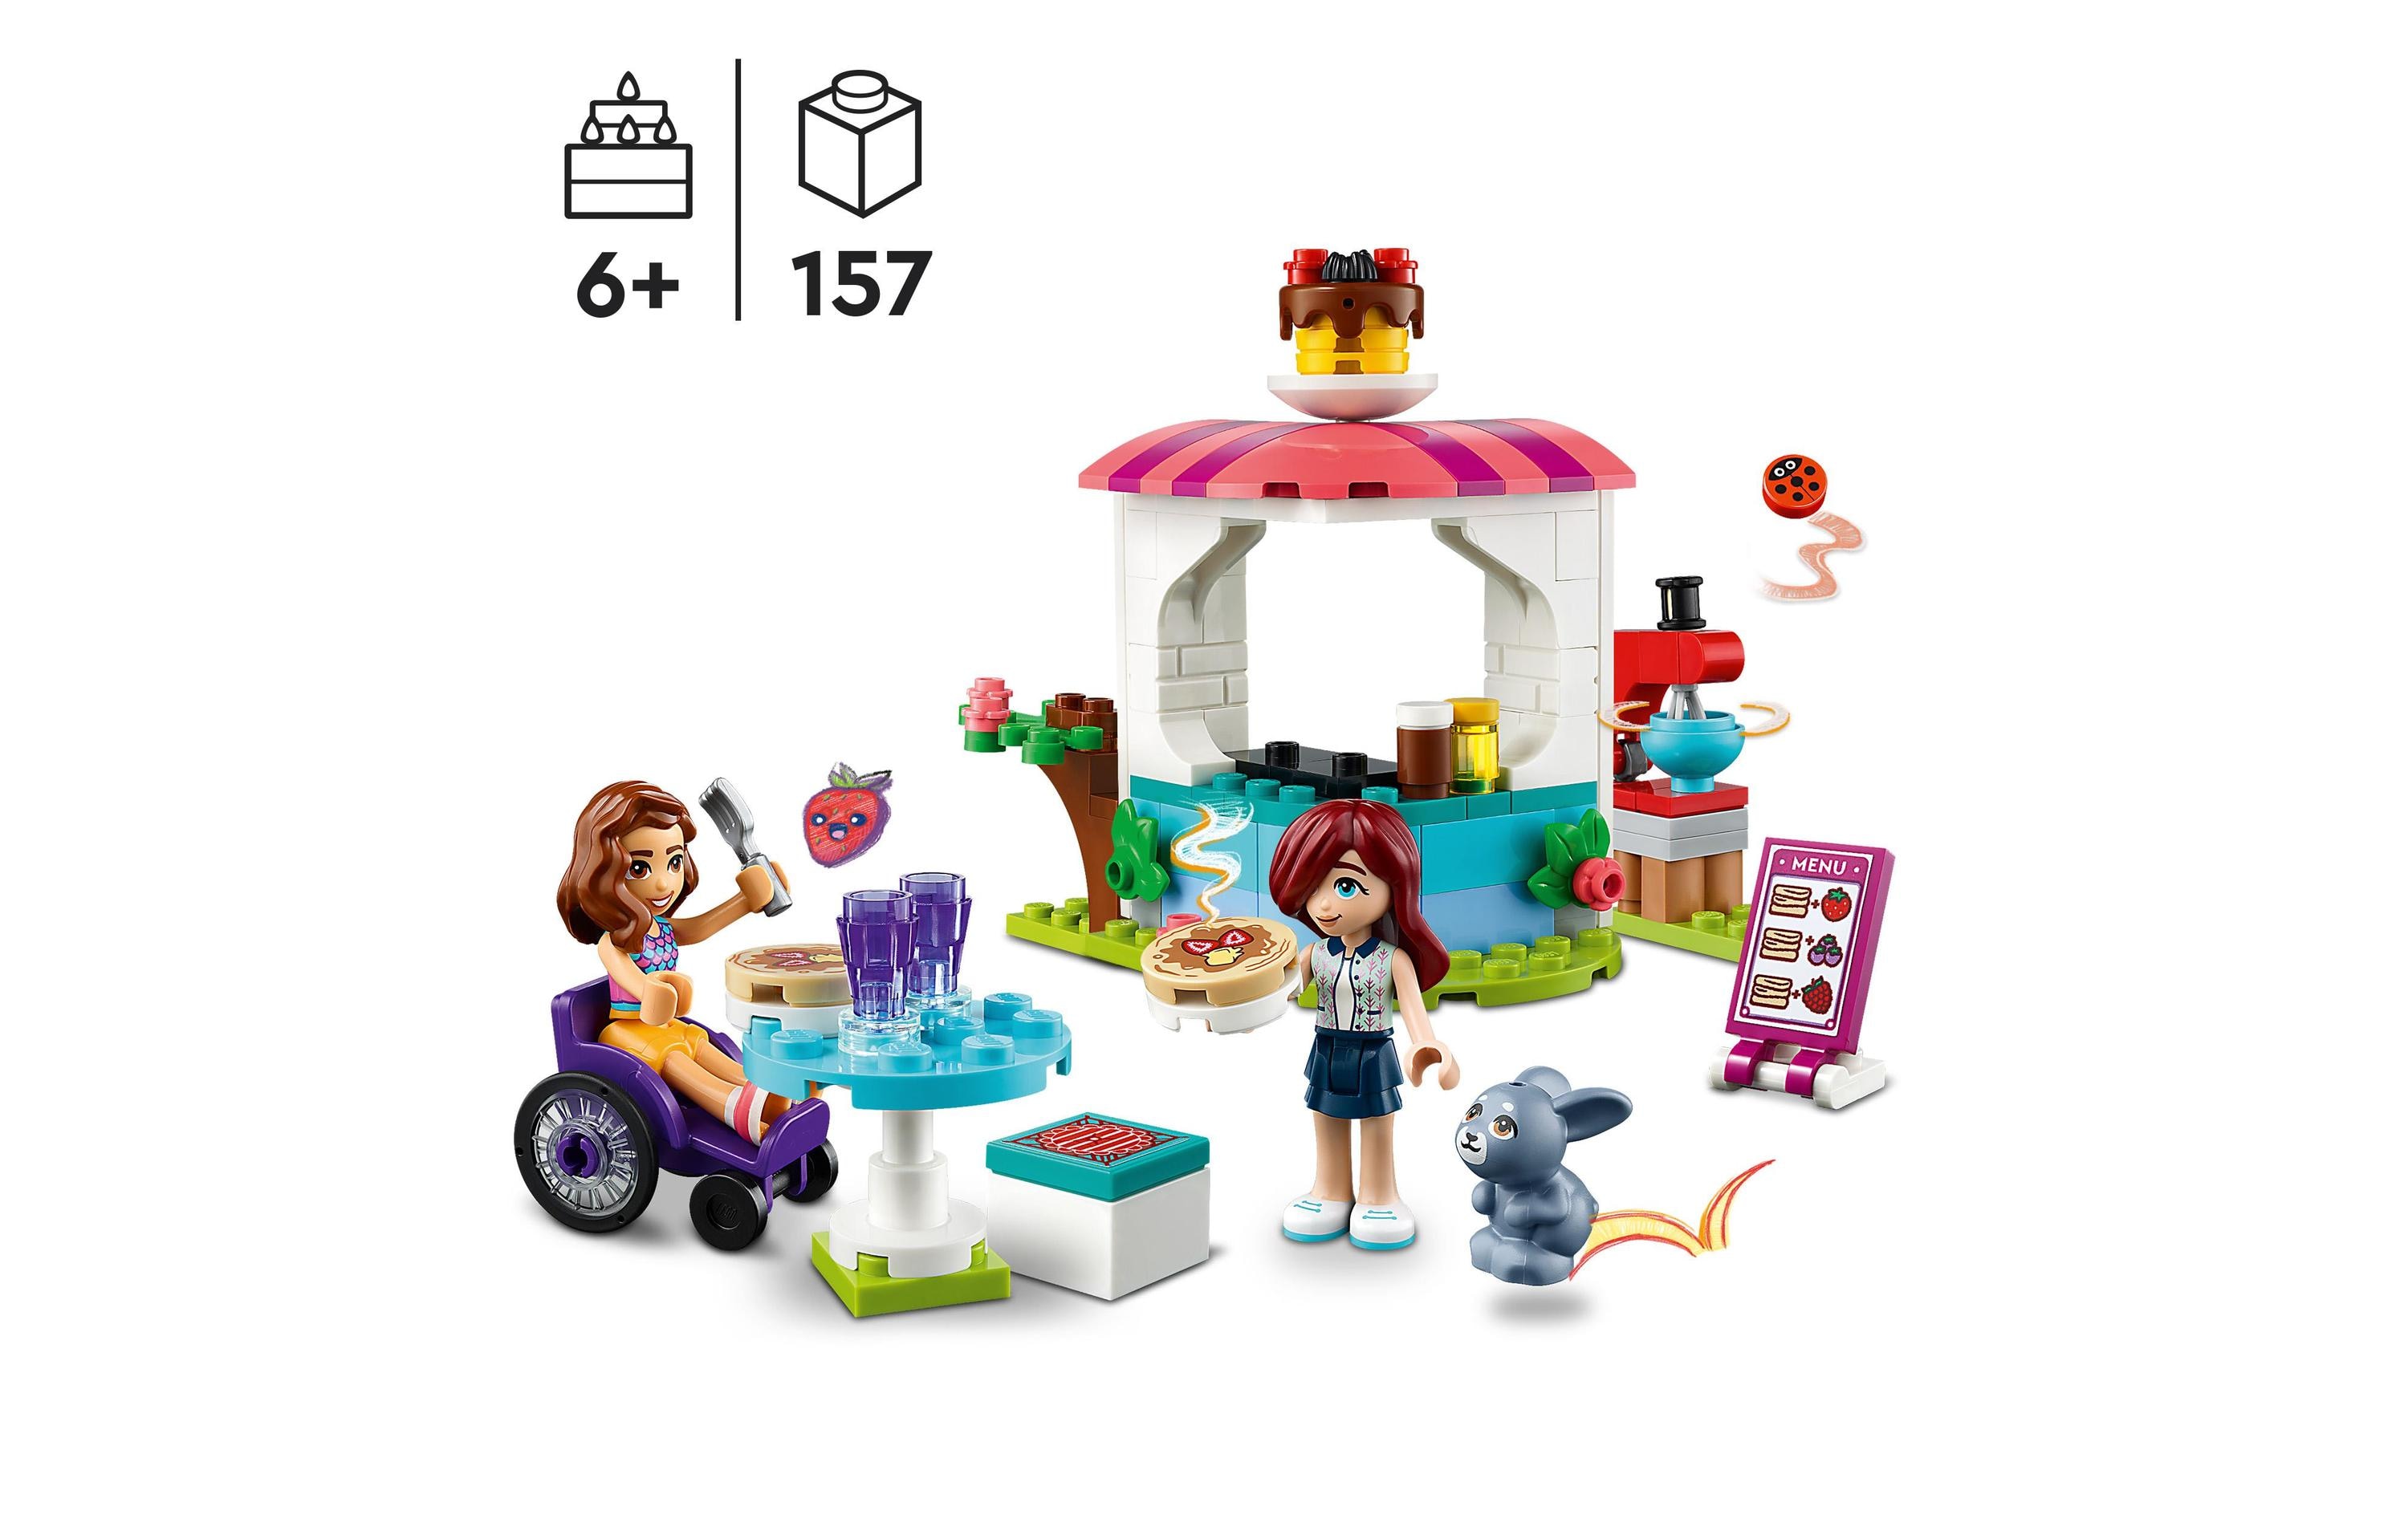 LEGO® Friends Pfannkuchen-Shop 41753